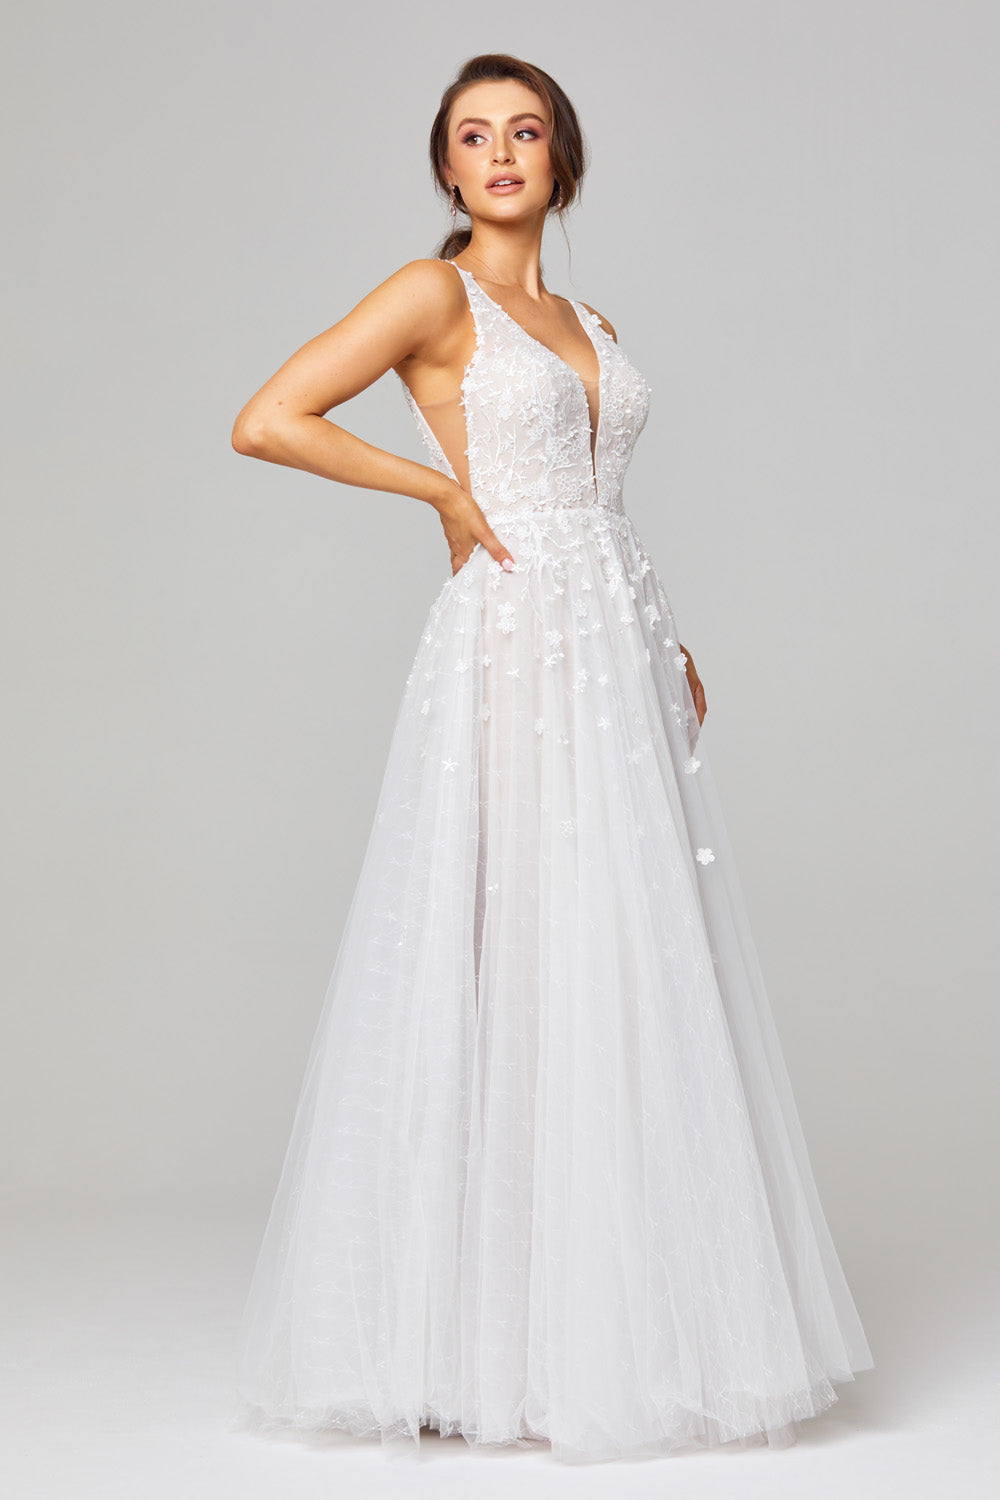 Tania Olsen Bridal TC289 Zara Gown - Vintage White